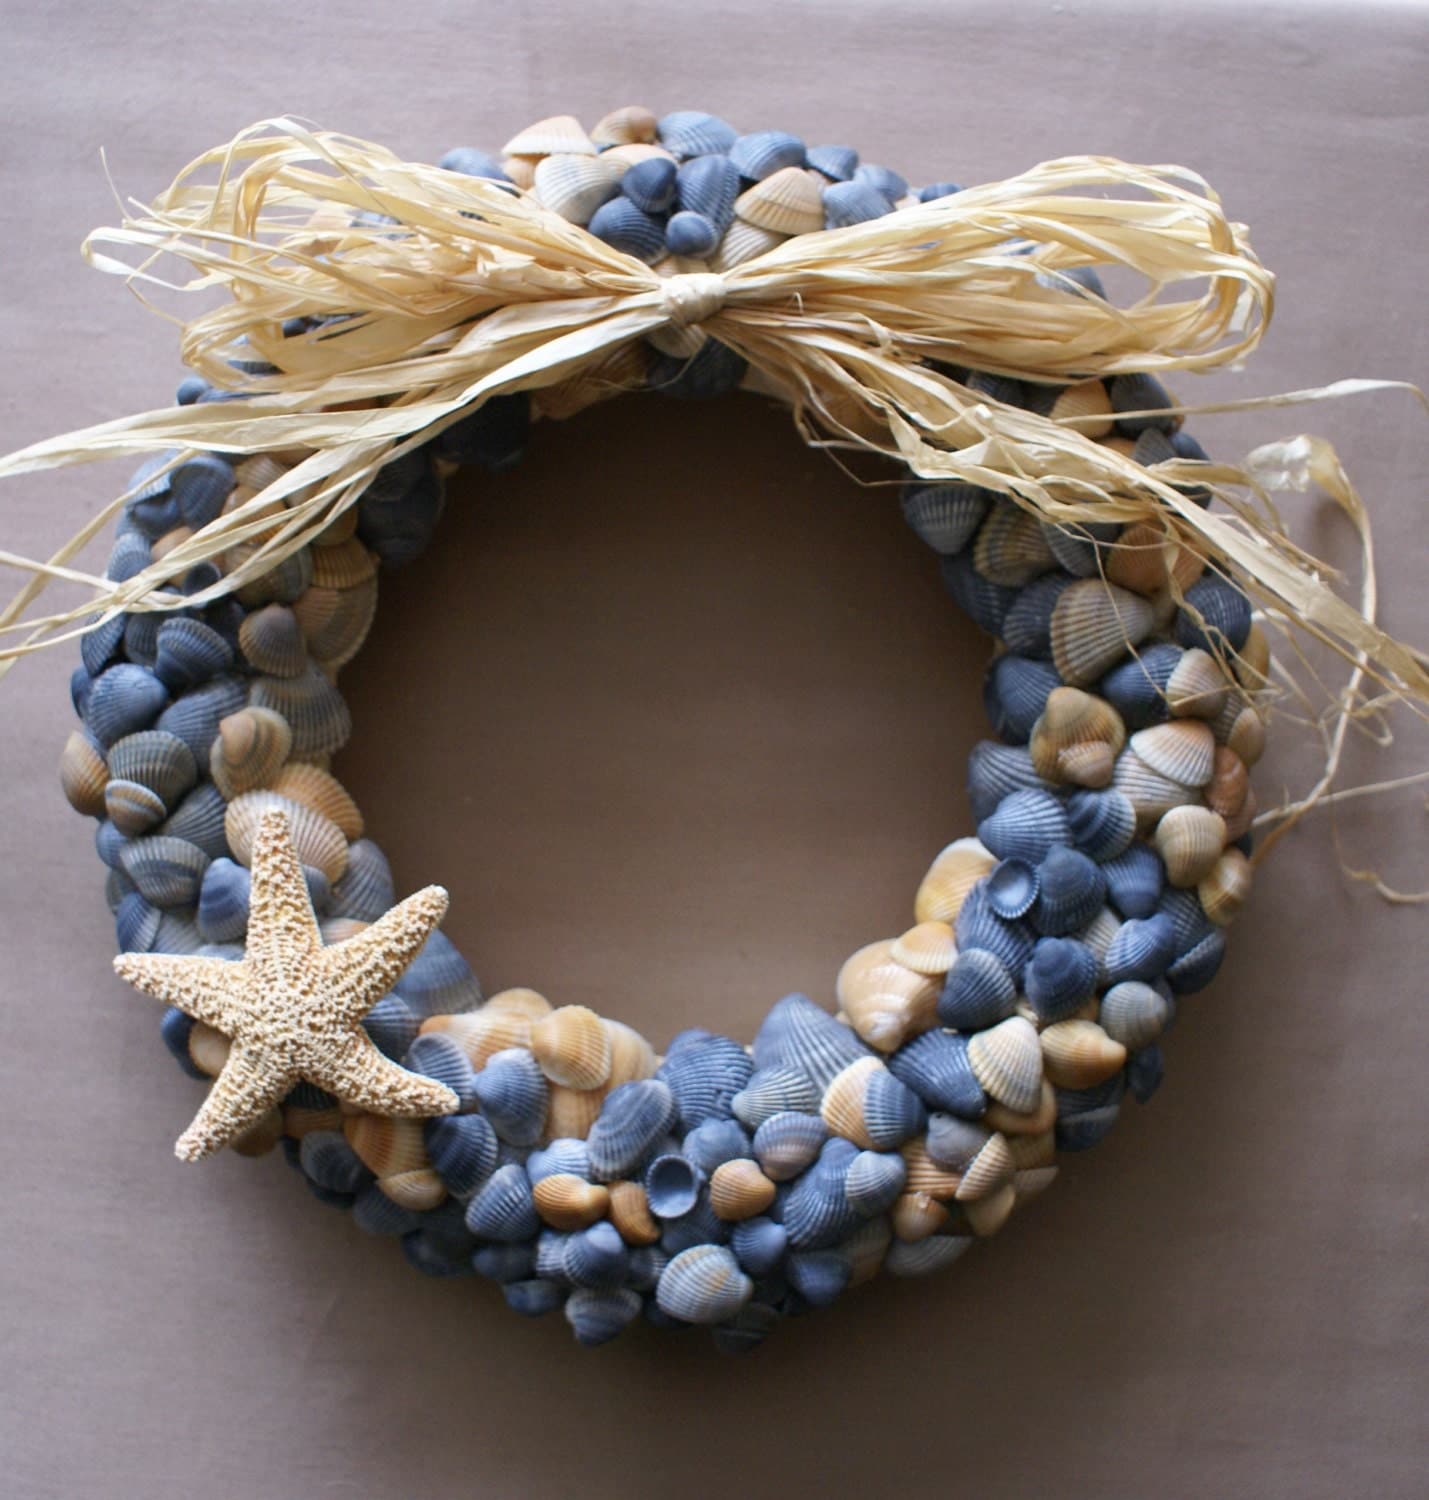 Seashell wreath 11 blue beach wreath coastal decor by JustShellin